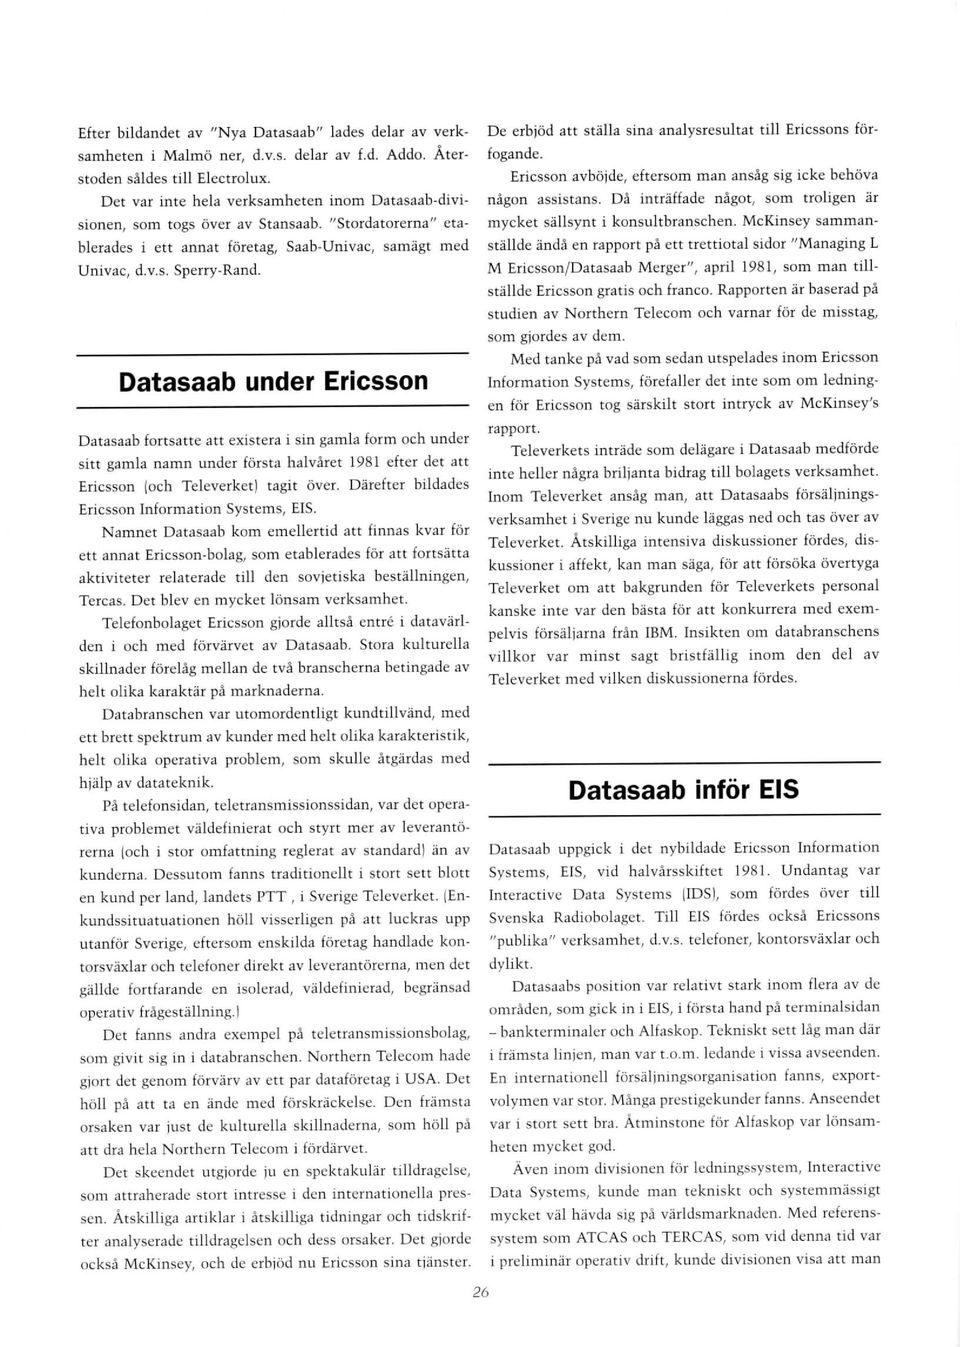 Datasaab under Ericsson Datasaab fortsatte att existera i sin gamla form och under sitt gamla namn under första halvåret 1981 efter det att Ericsson (och Televerket) tagit över.